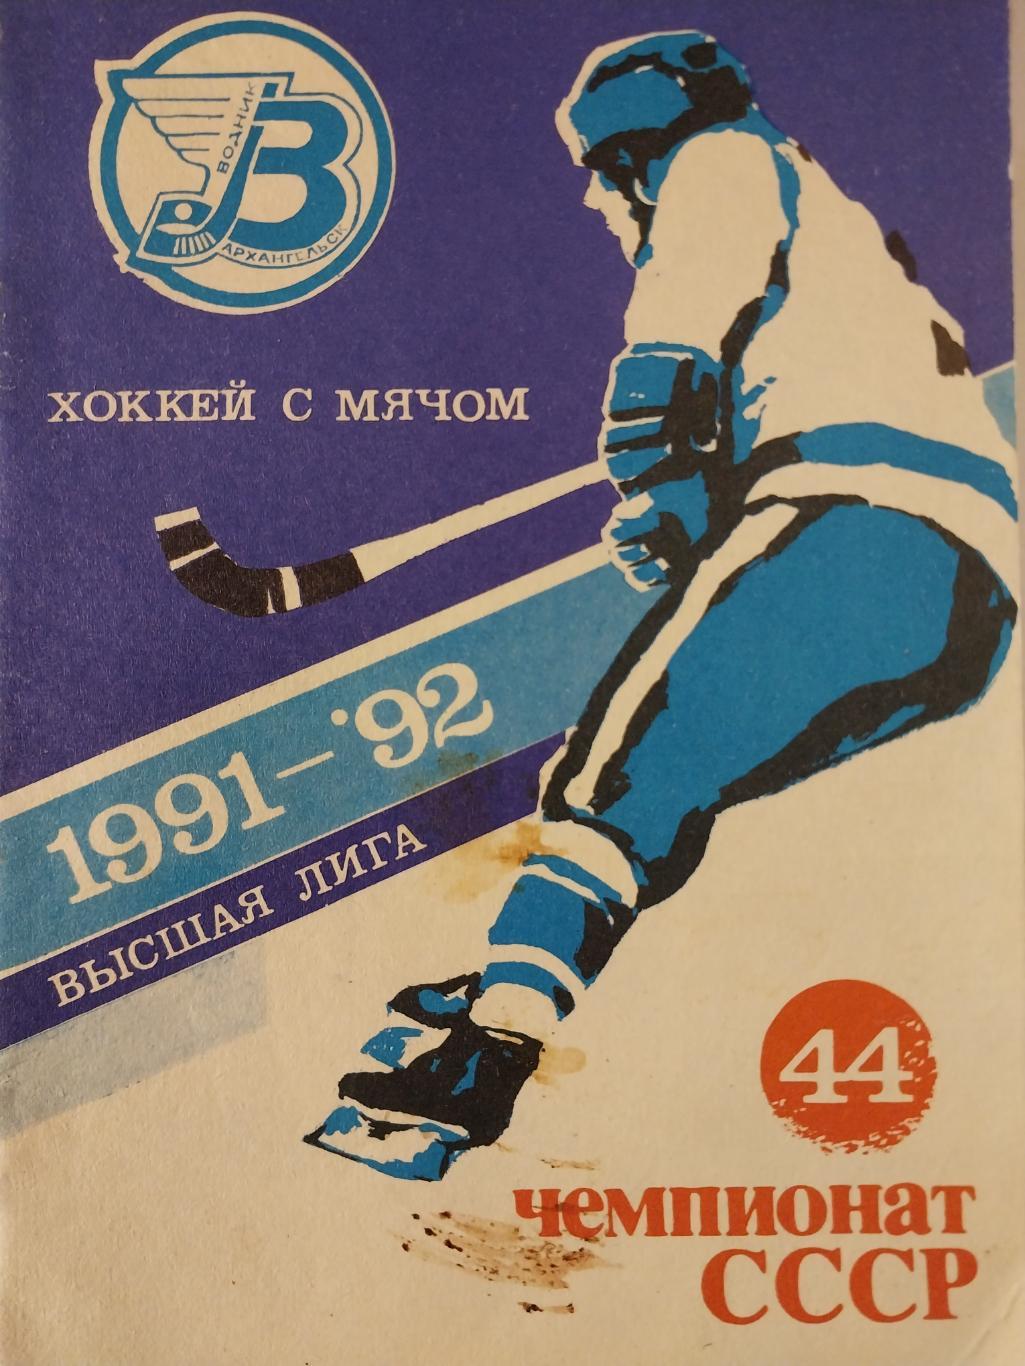 Хоккей с мячом. Водник Архангельск 1991-92